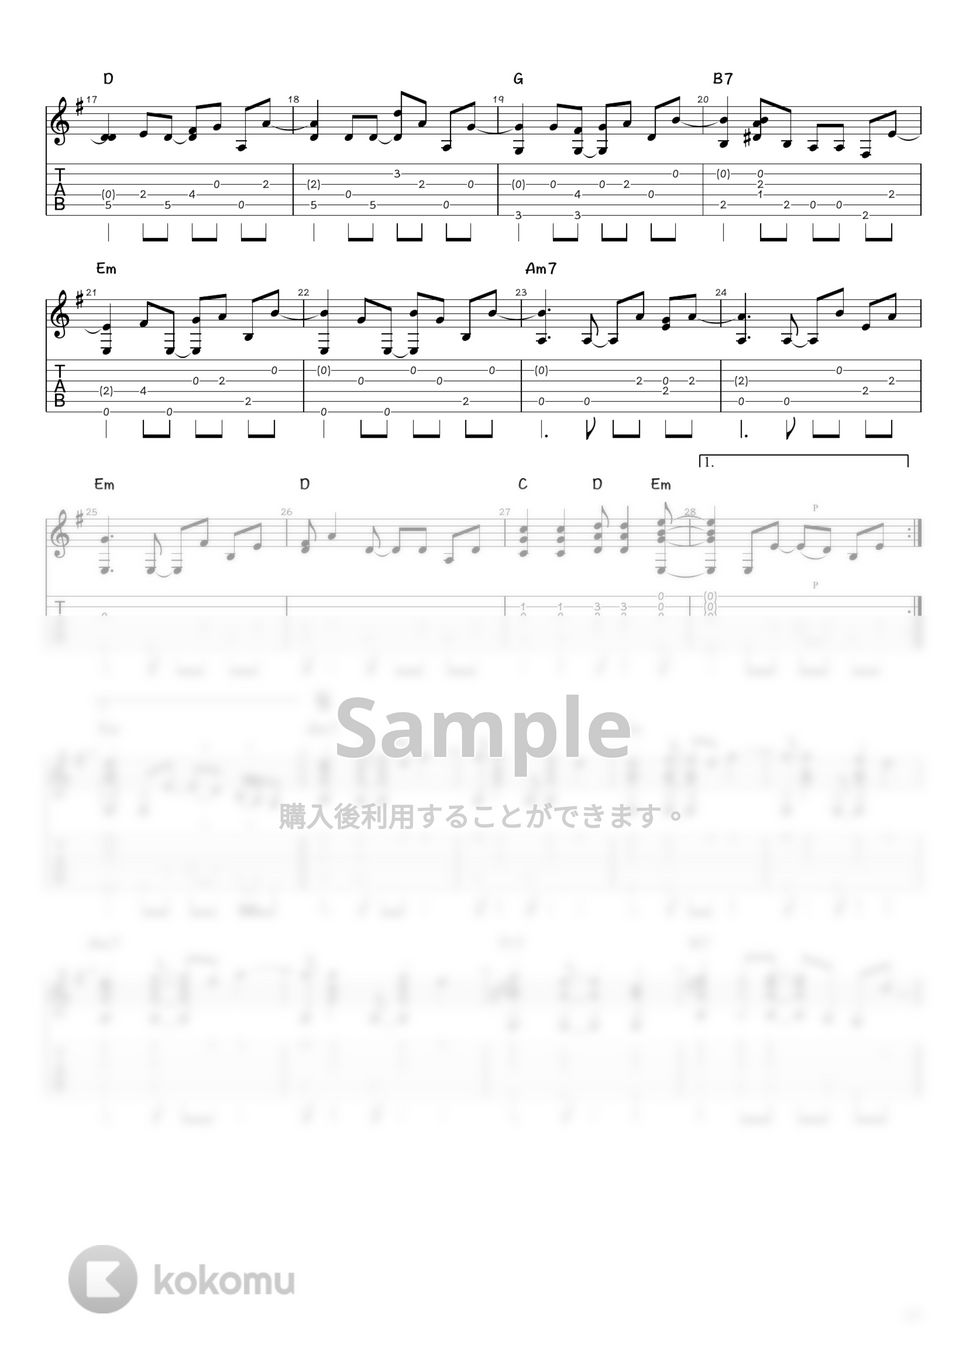 サザンオールスターズ - HOTEL PACIFIC (ソロギター / タブ譜) by 井上さとみ